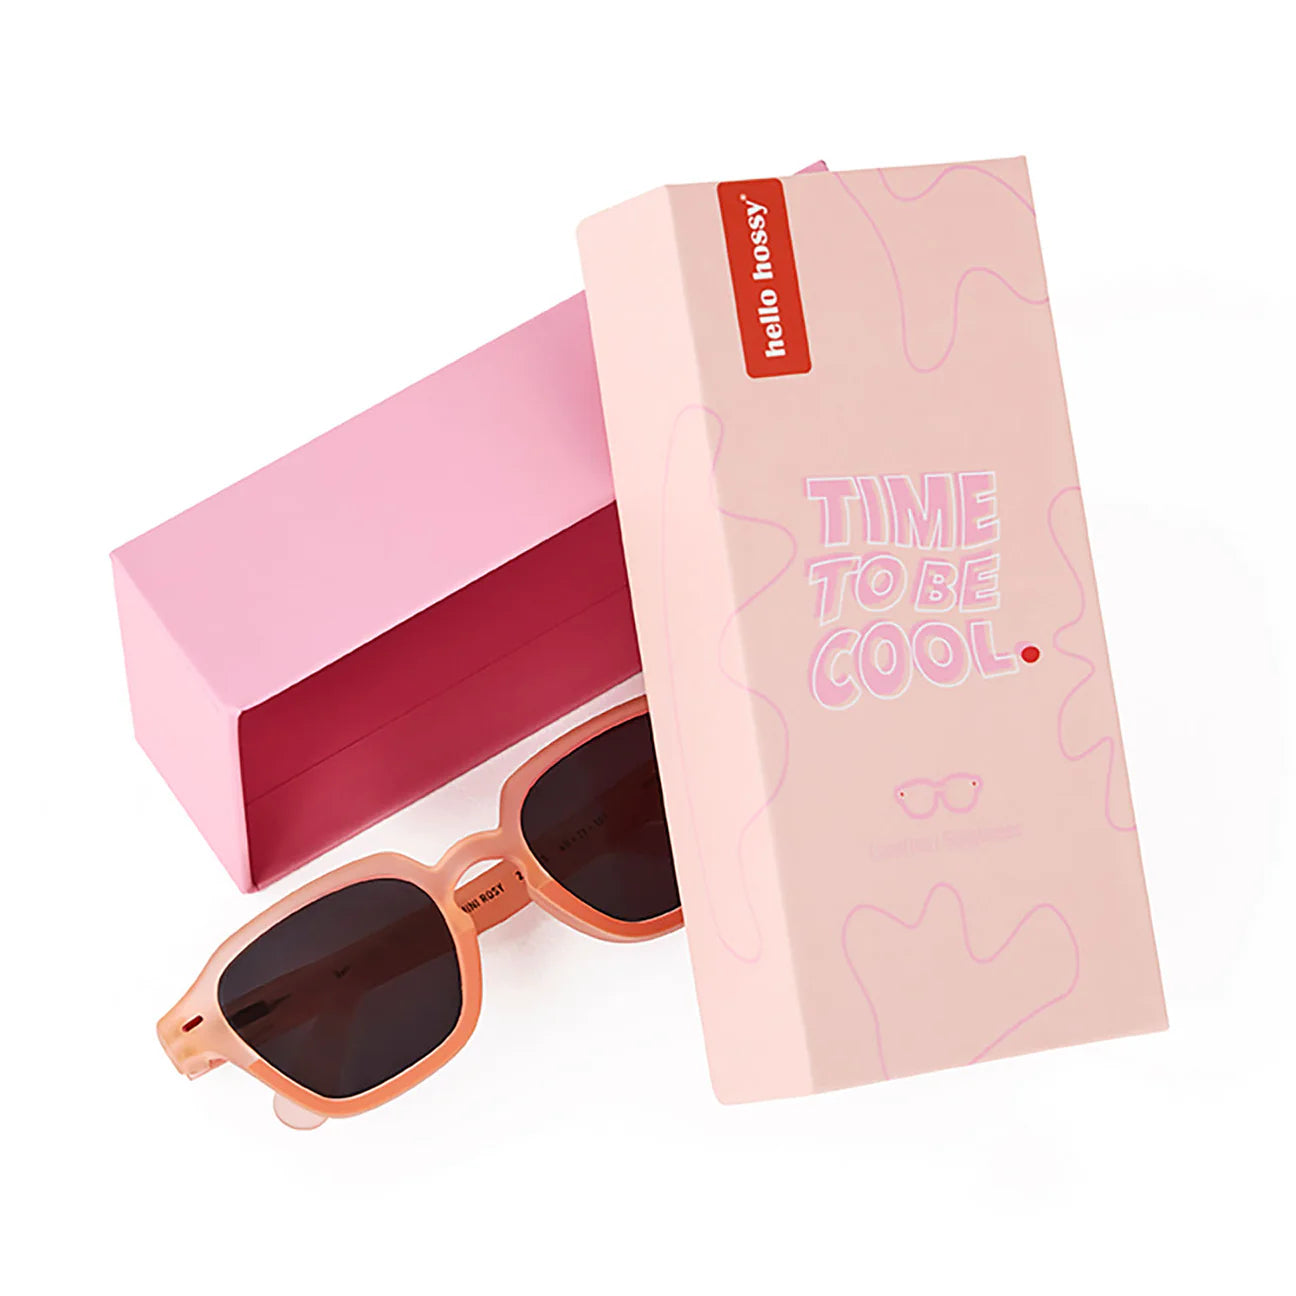 Sunglasses - Mini Rosy